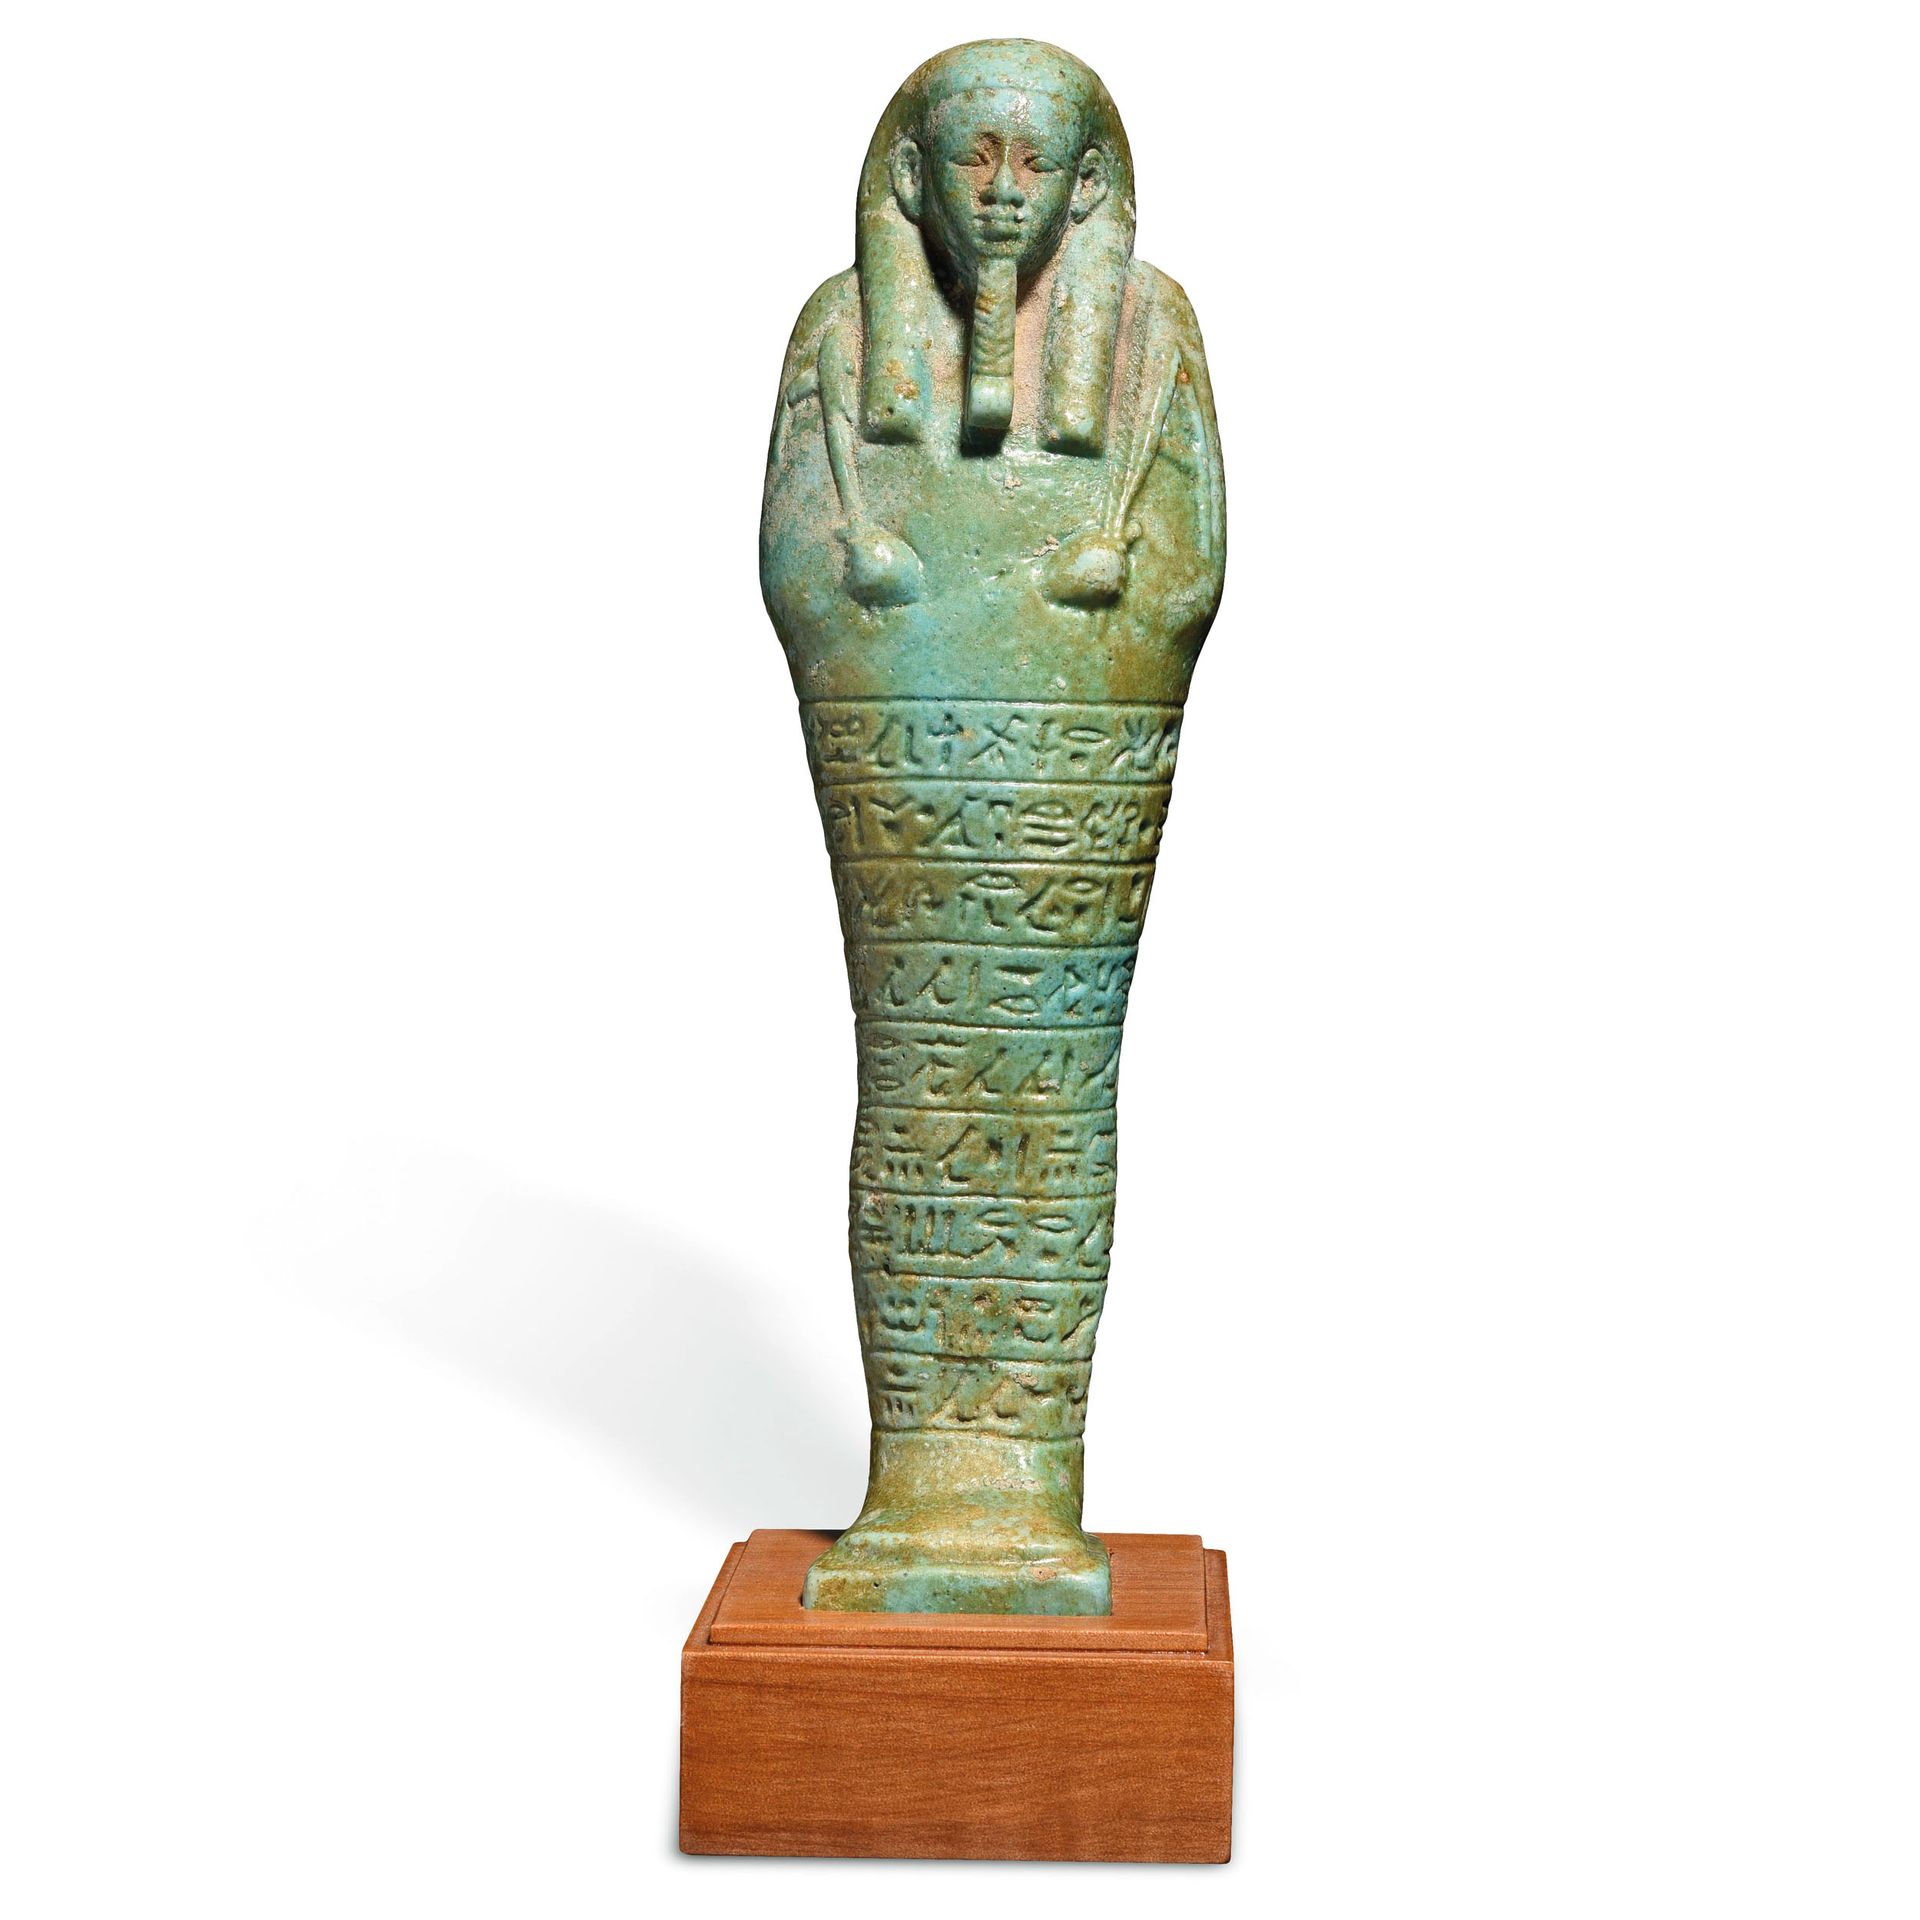 Null OUSHABTI EN NOMBRE DE PSAMETIK

Egipto, dinastía 26, 664-525 a.C. 

Loza si&hellip;